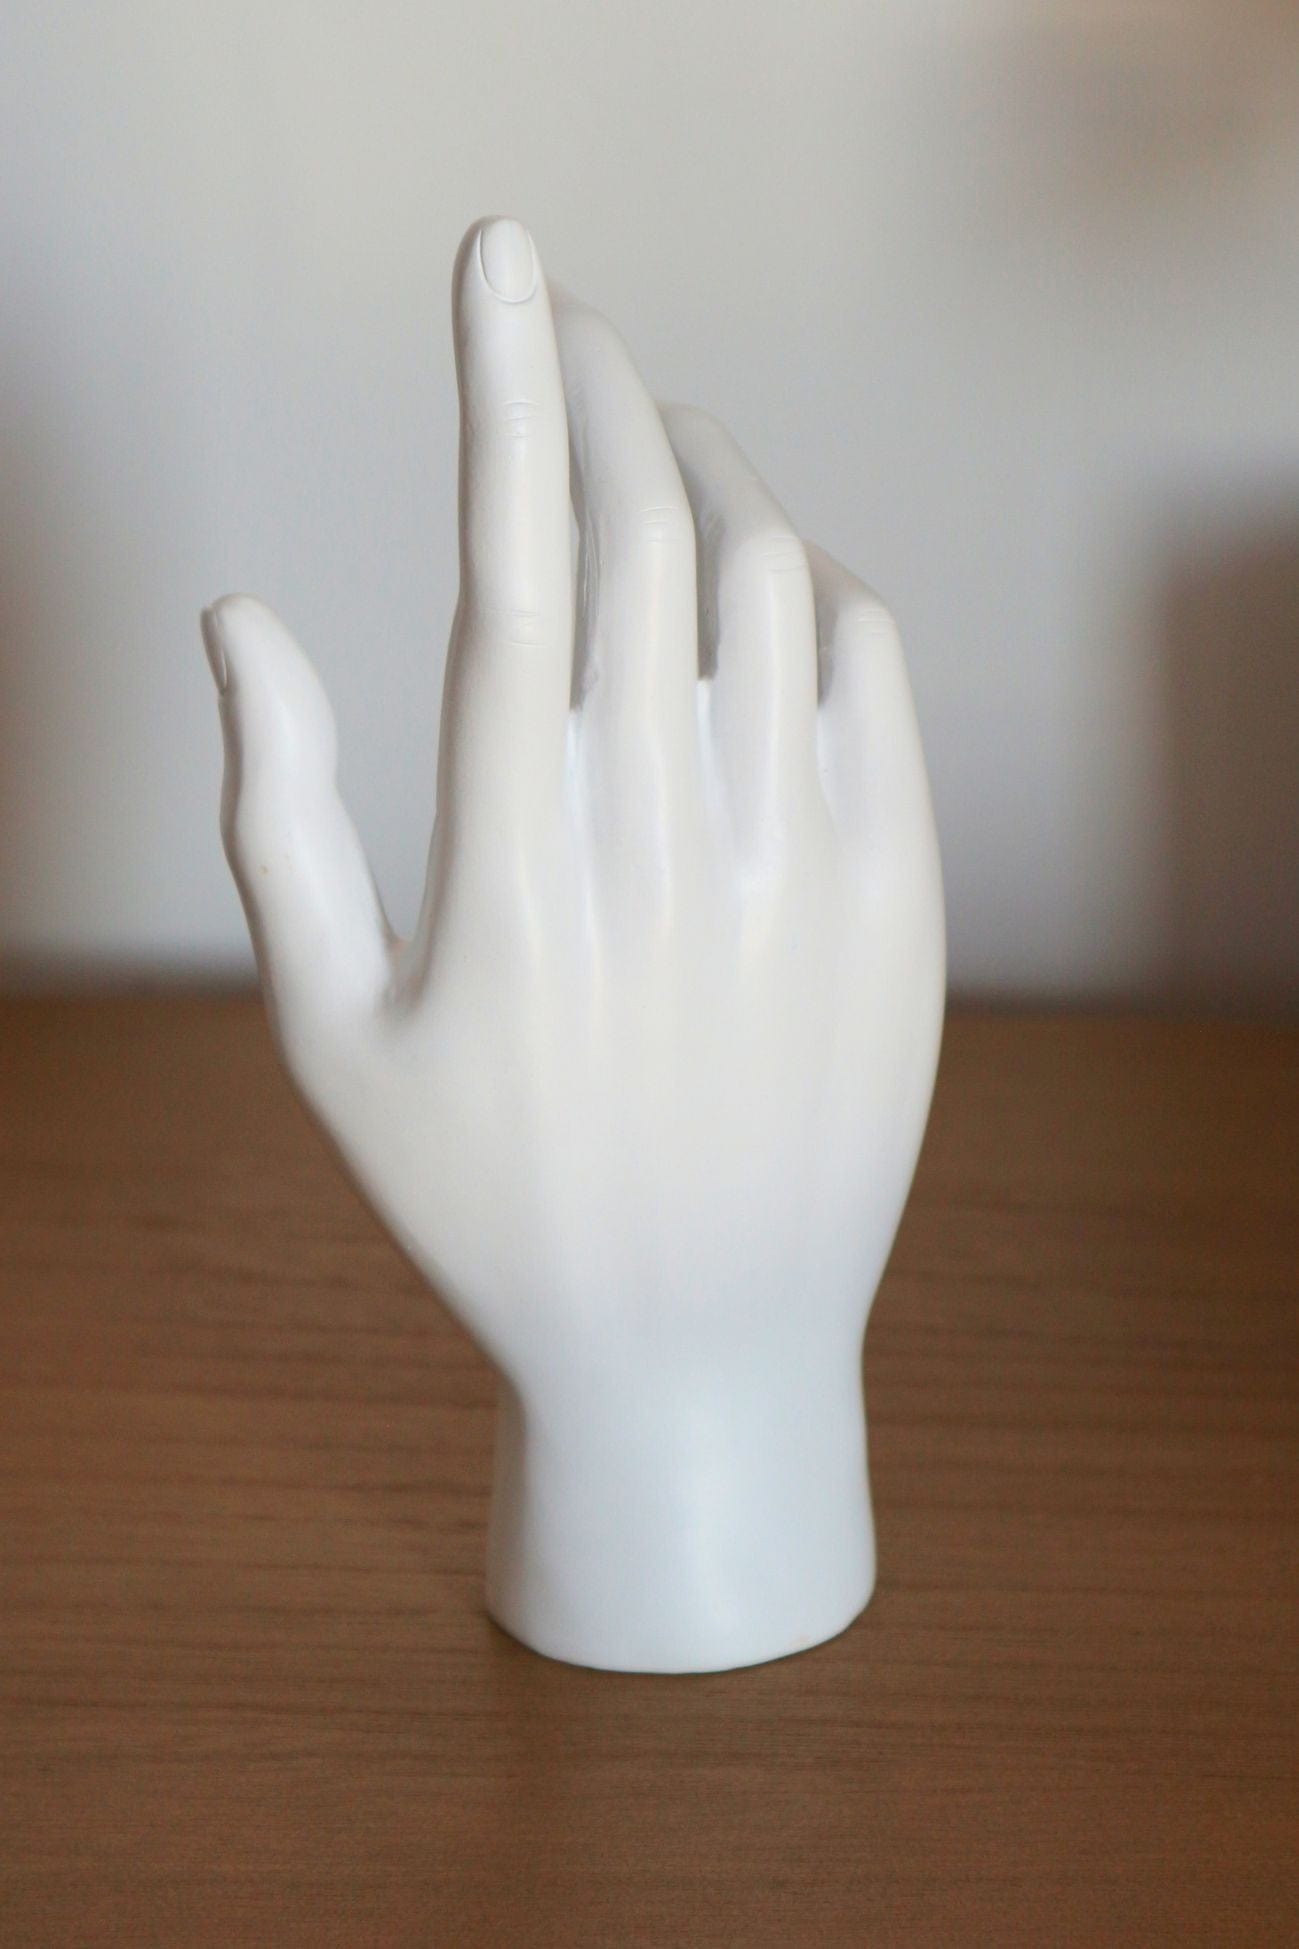 Item International Dagan Dagan - Decorazione in resina a forma di mano bianca | Item International